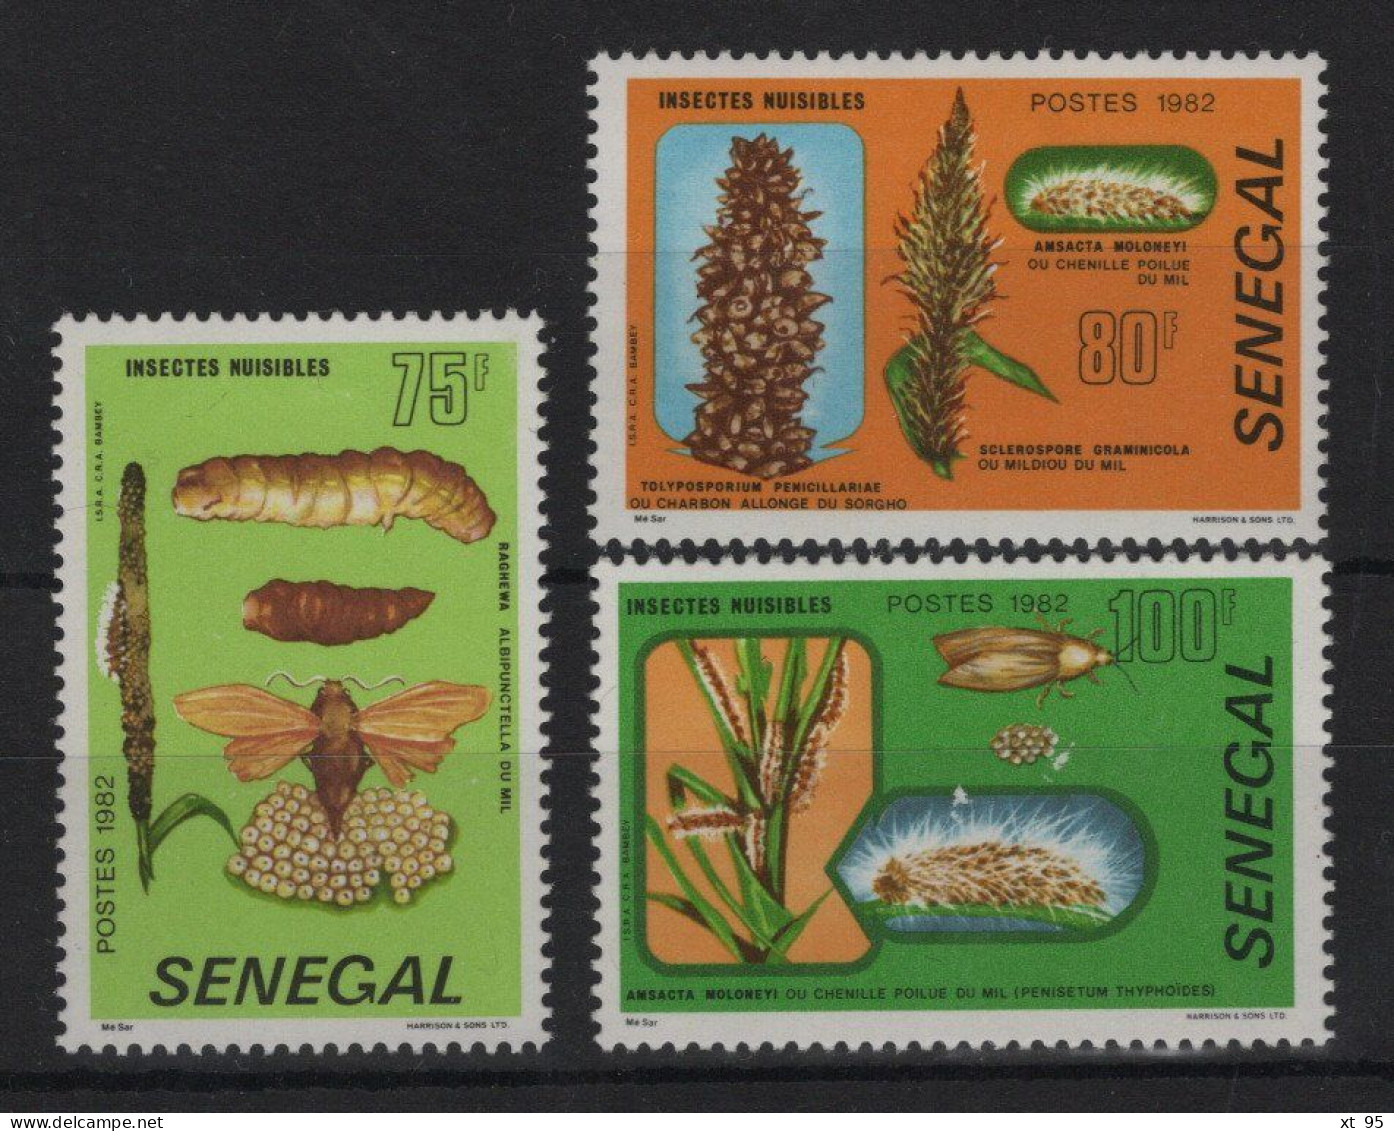 Senegal - N°570 à 572 - * Neufs Avec Trace De Charniere - Cote 10€ - Sénégal (1960-...)